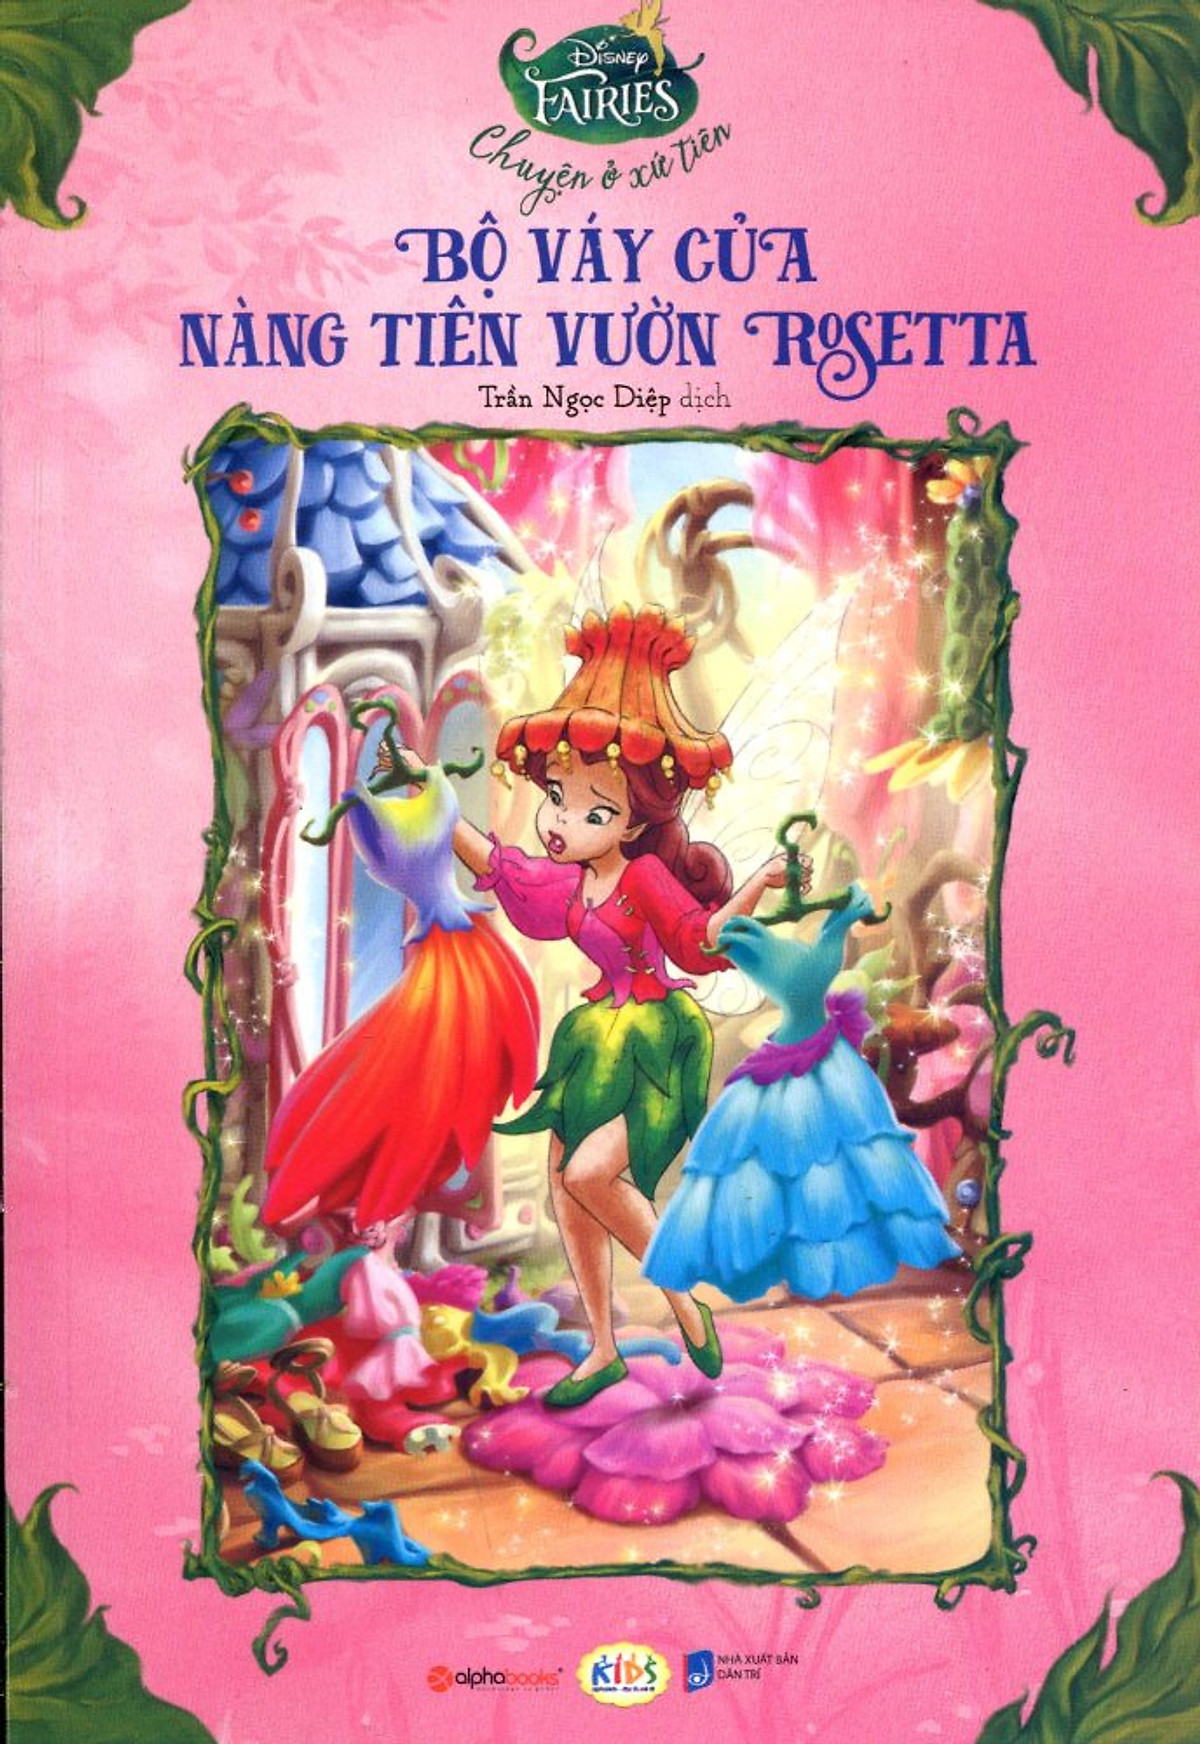 Disney Fairies - Bộ Váy Của Nàng Tiên Vườn Rosetta